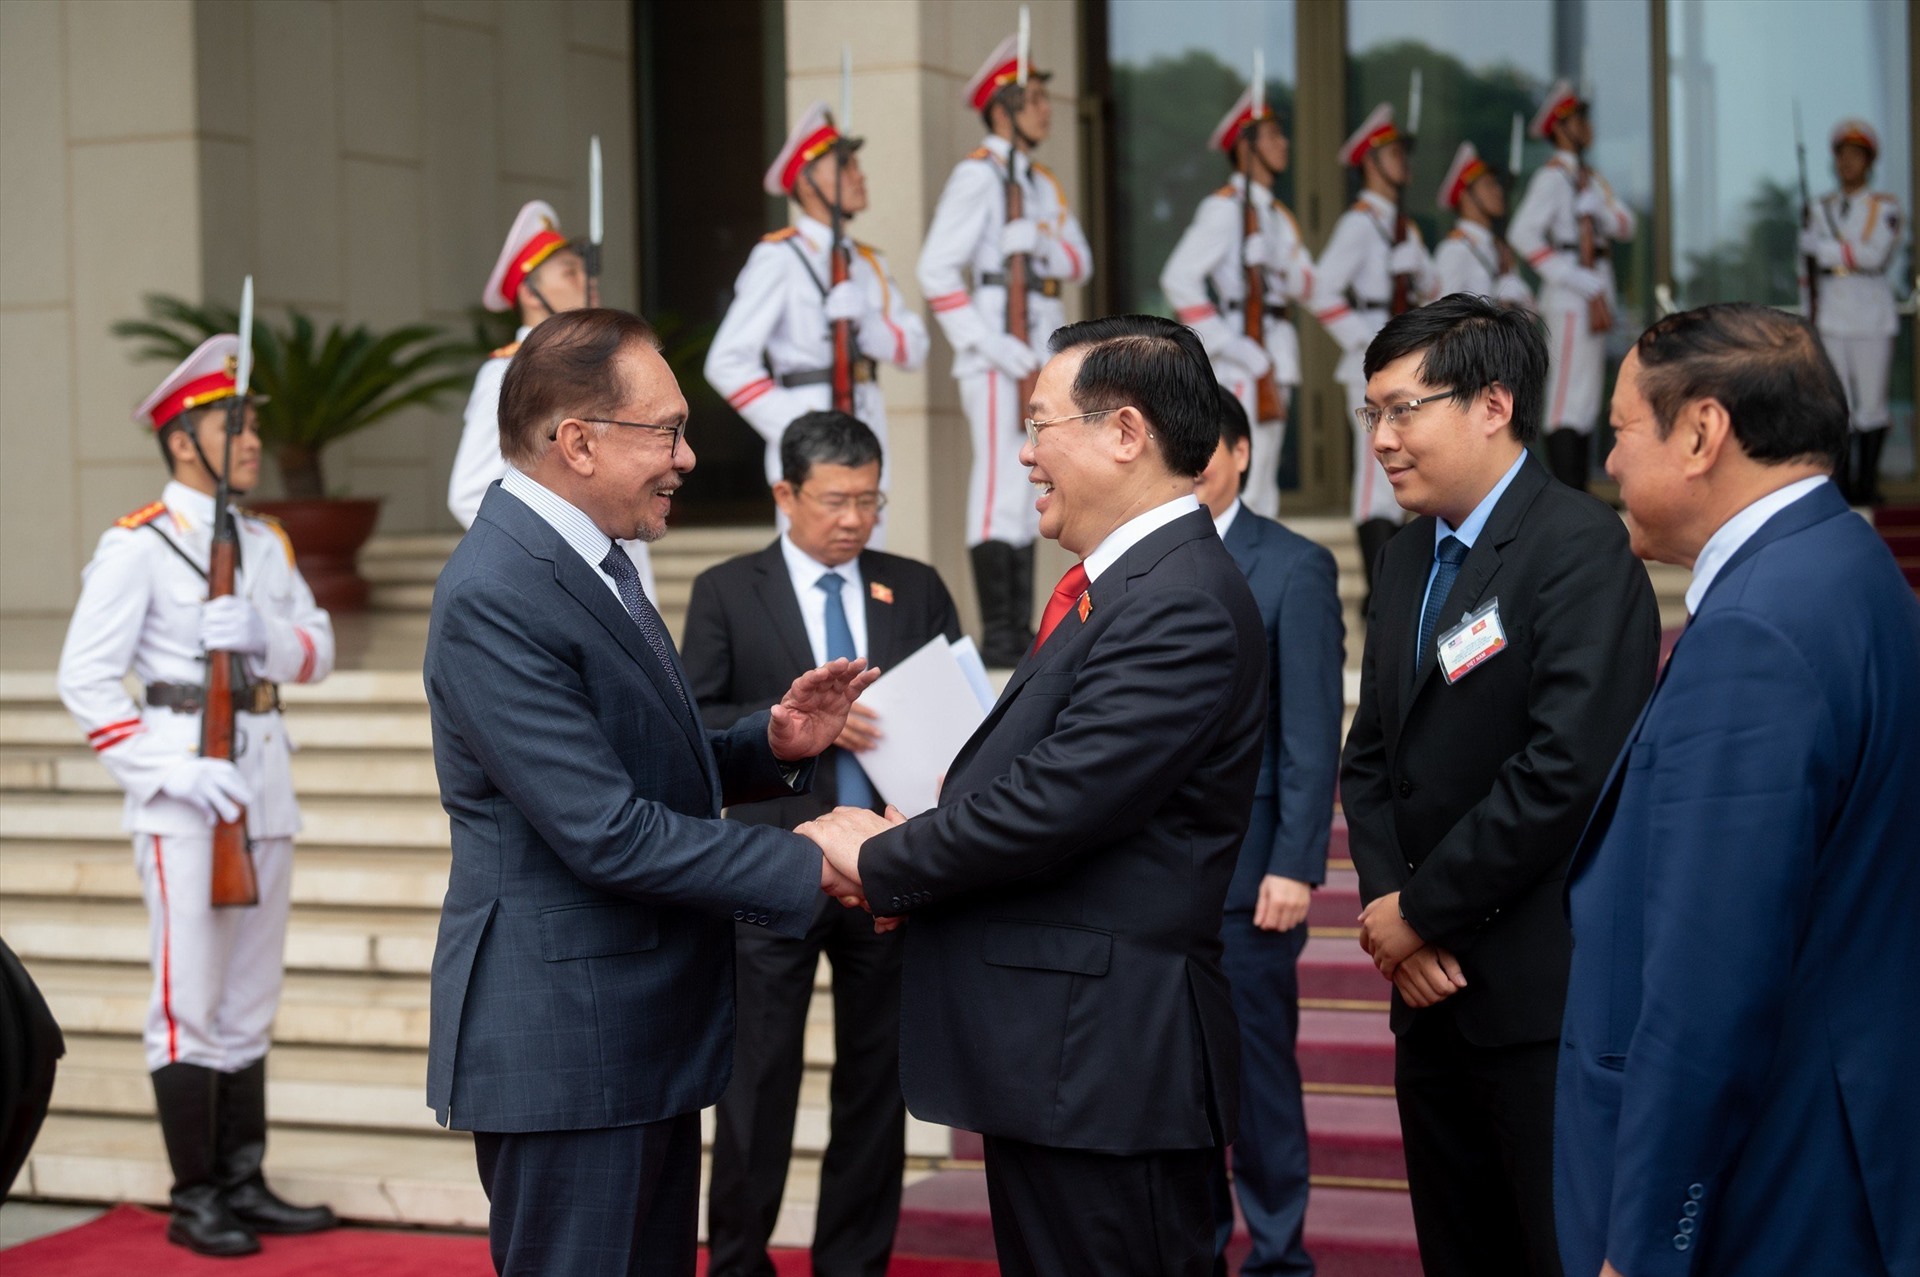 Đây là chuyến thăm đầu tiên của ngài Anwar Ibrahim đến Việt Nam trên cương vị Thủ tướng Malaysia. Ảnh: Hải Nguyễn